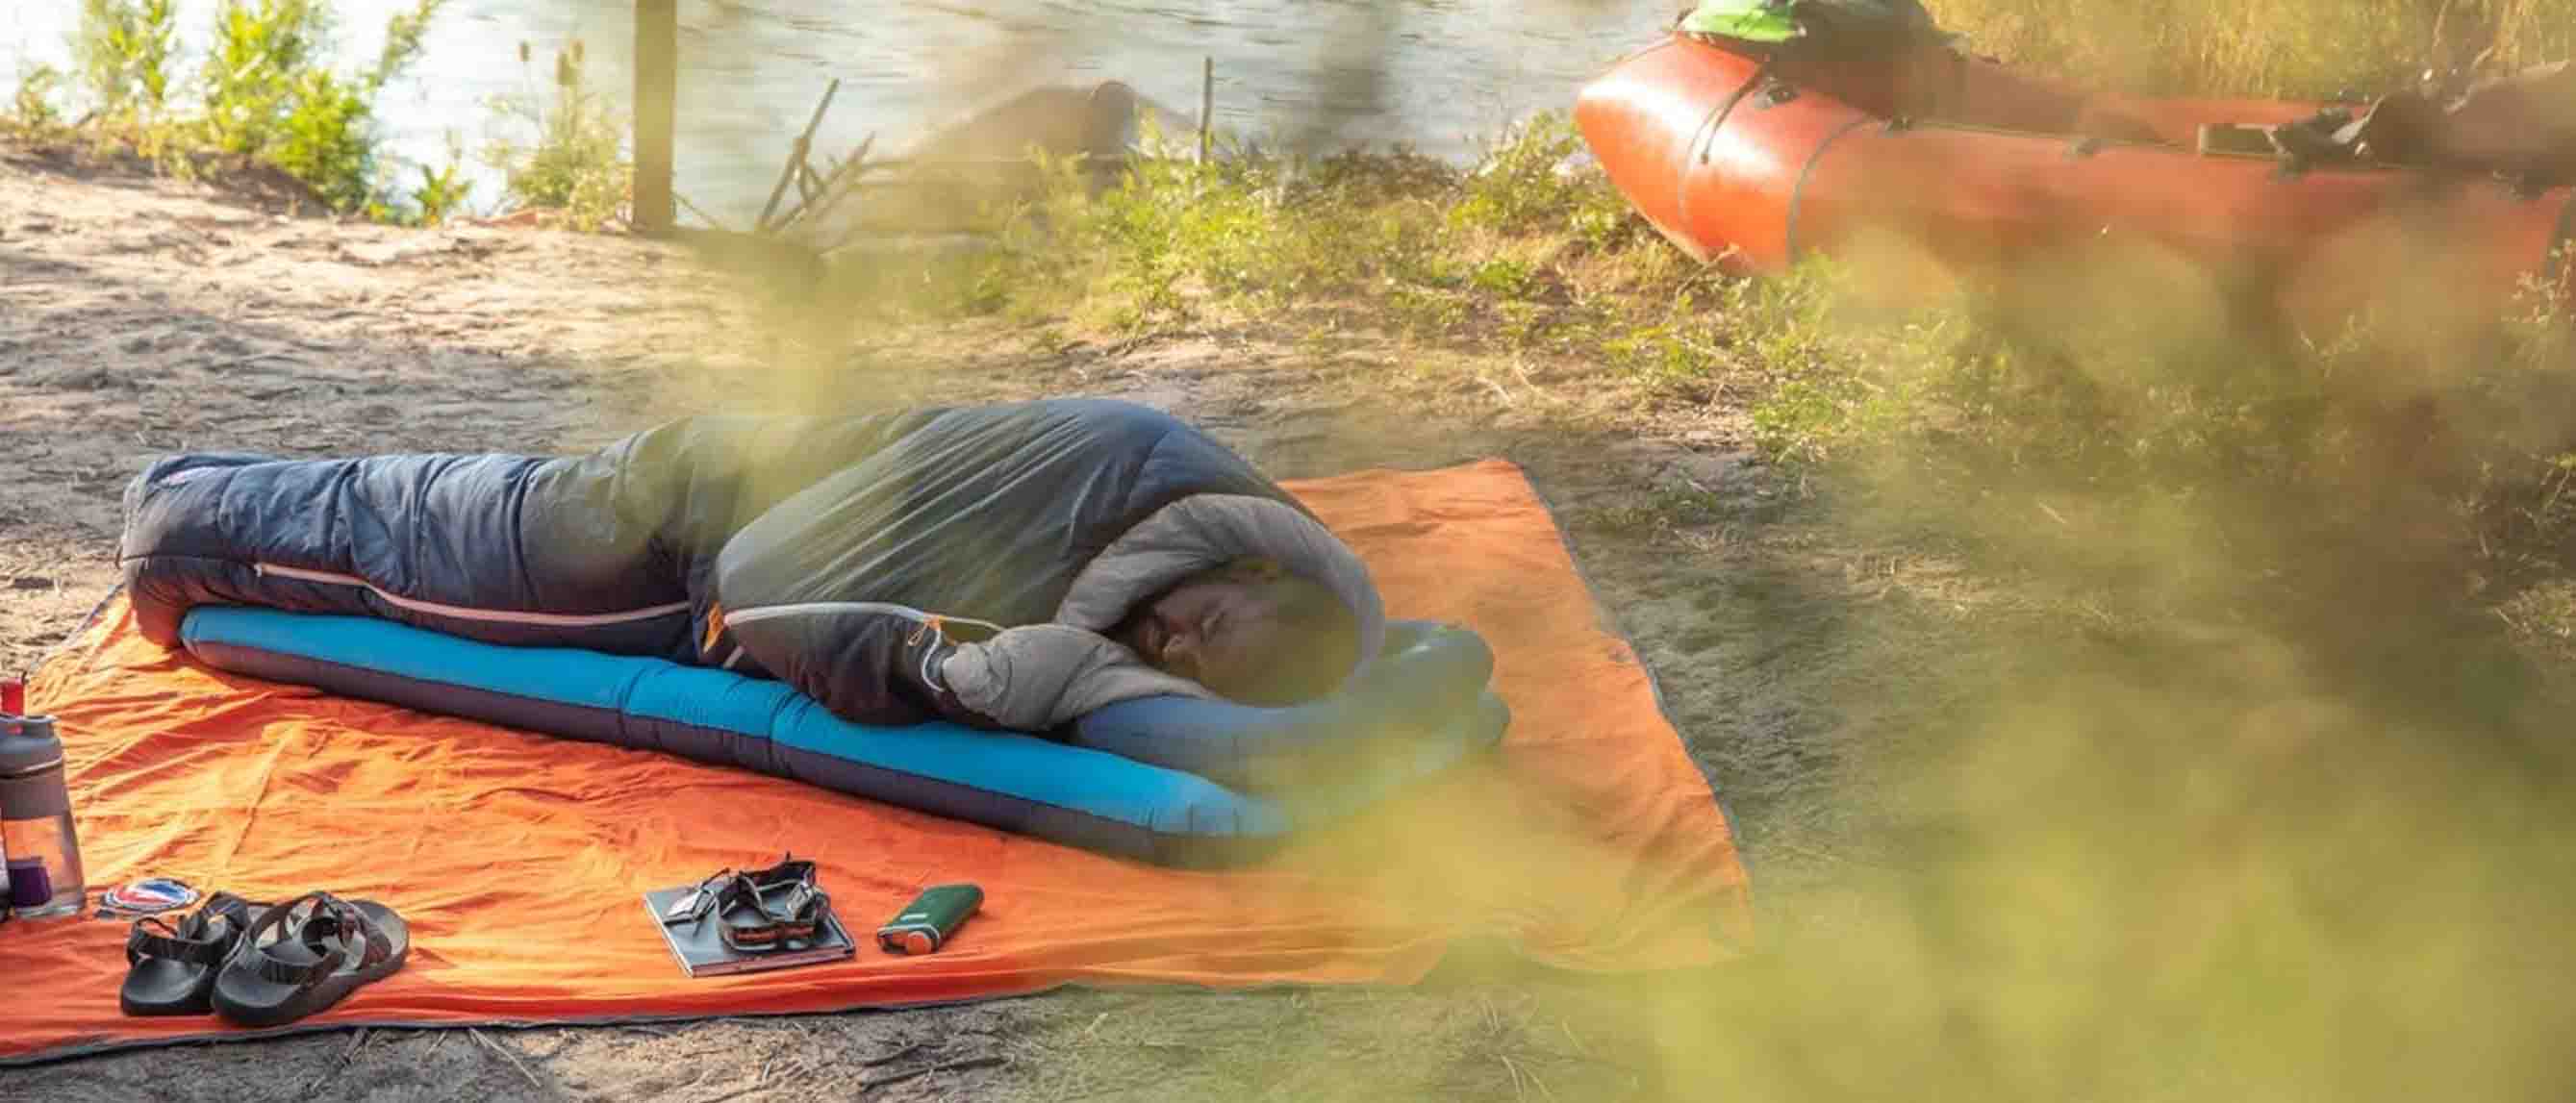 Man sleeping outdoor in sleeping bag